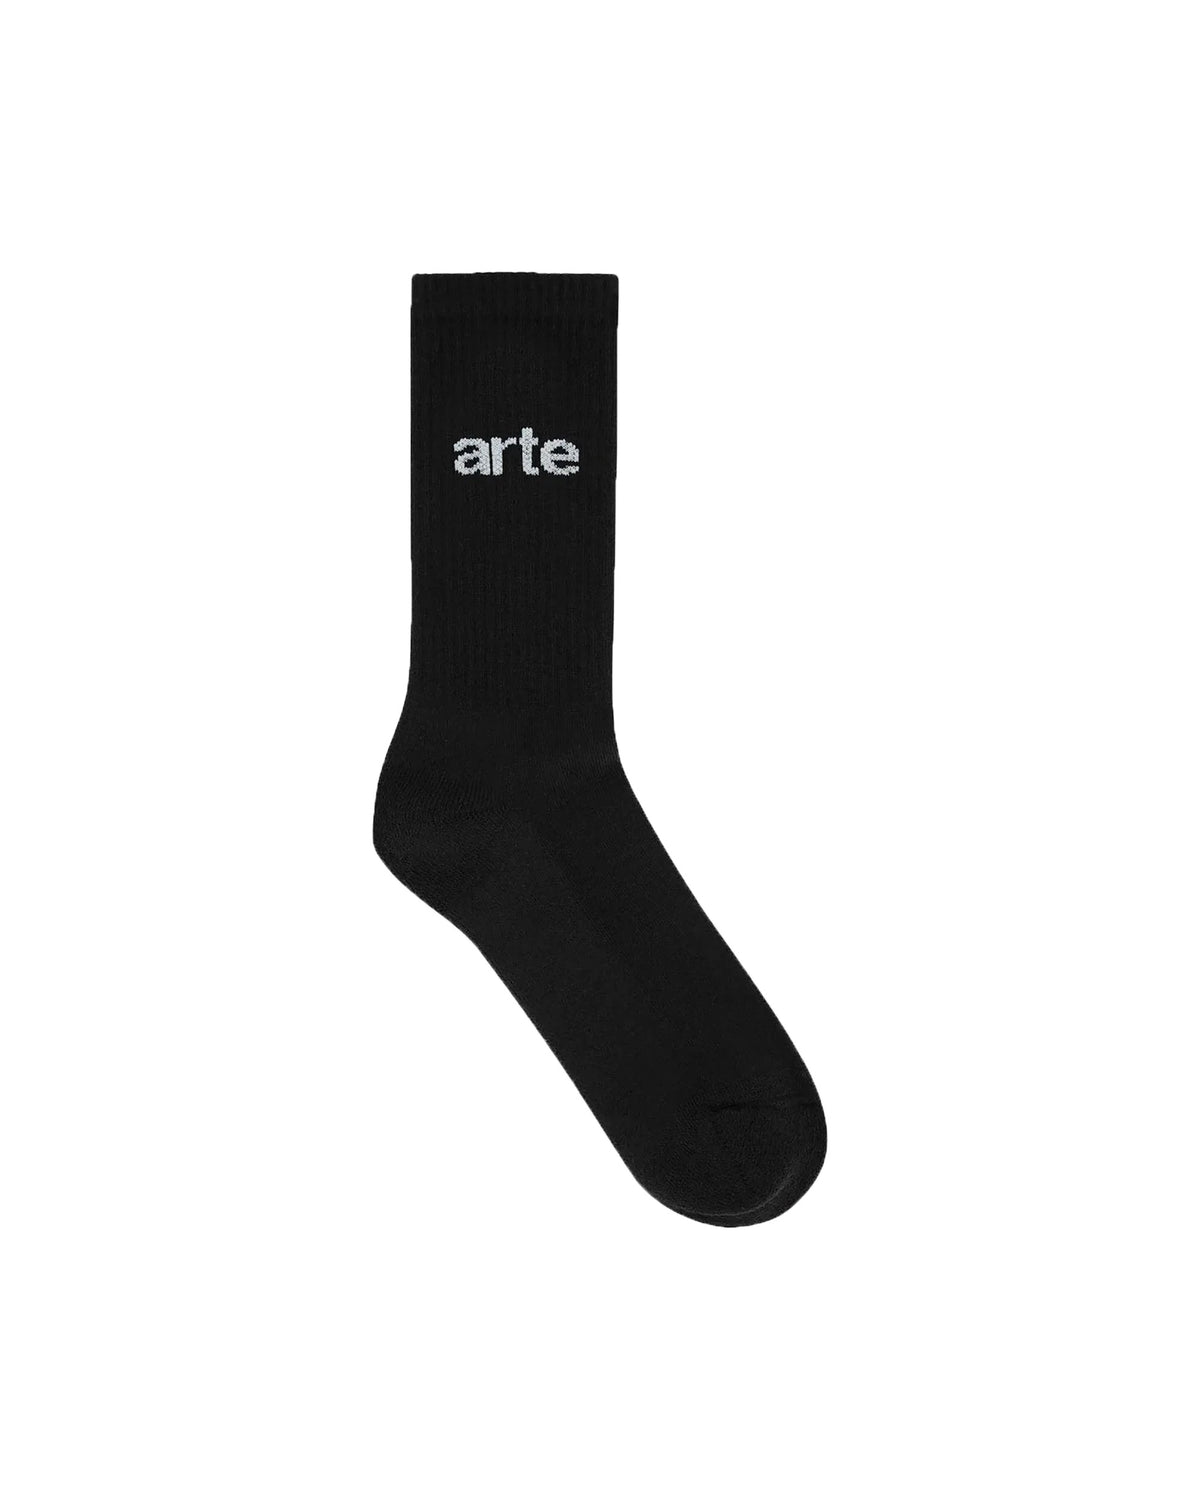 Arte Antwerp Logo Socks Black